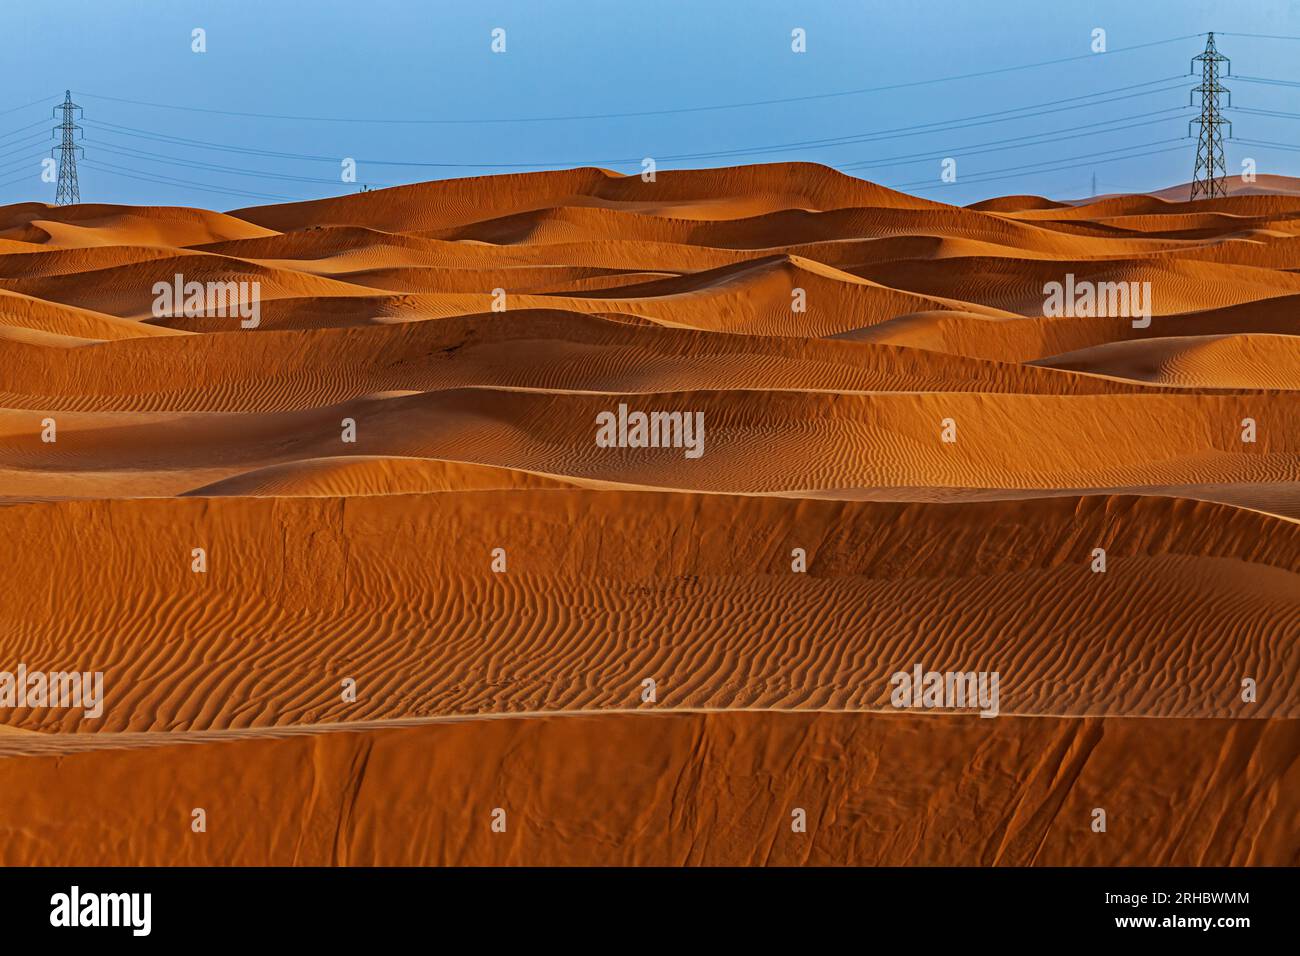 Tralicci elettrici tra le dune di sabbia arancione nel deserto, Arabia Saudita Foto Stock